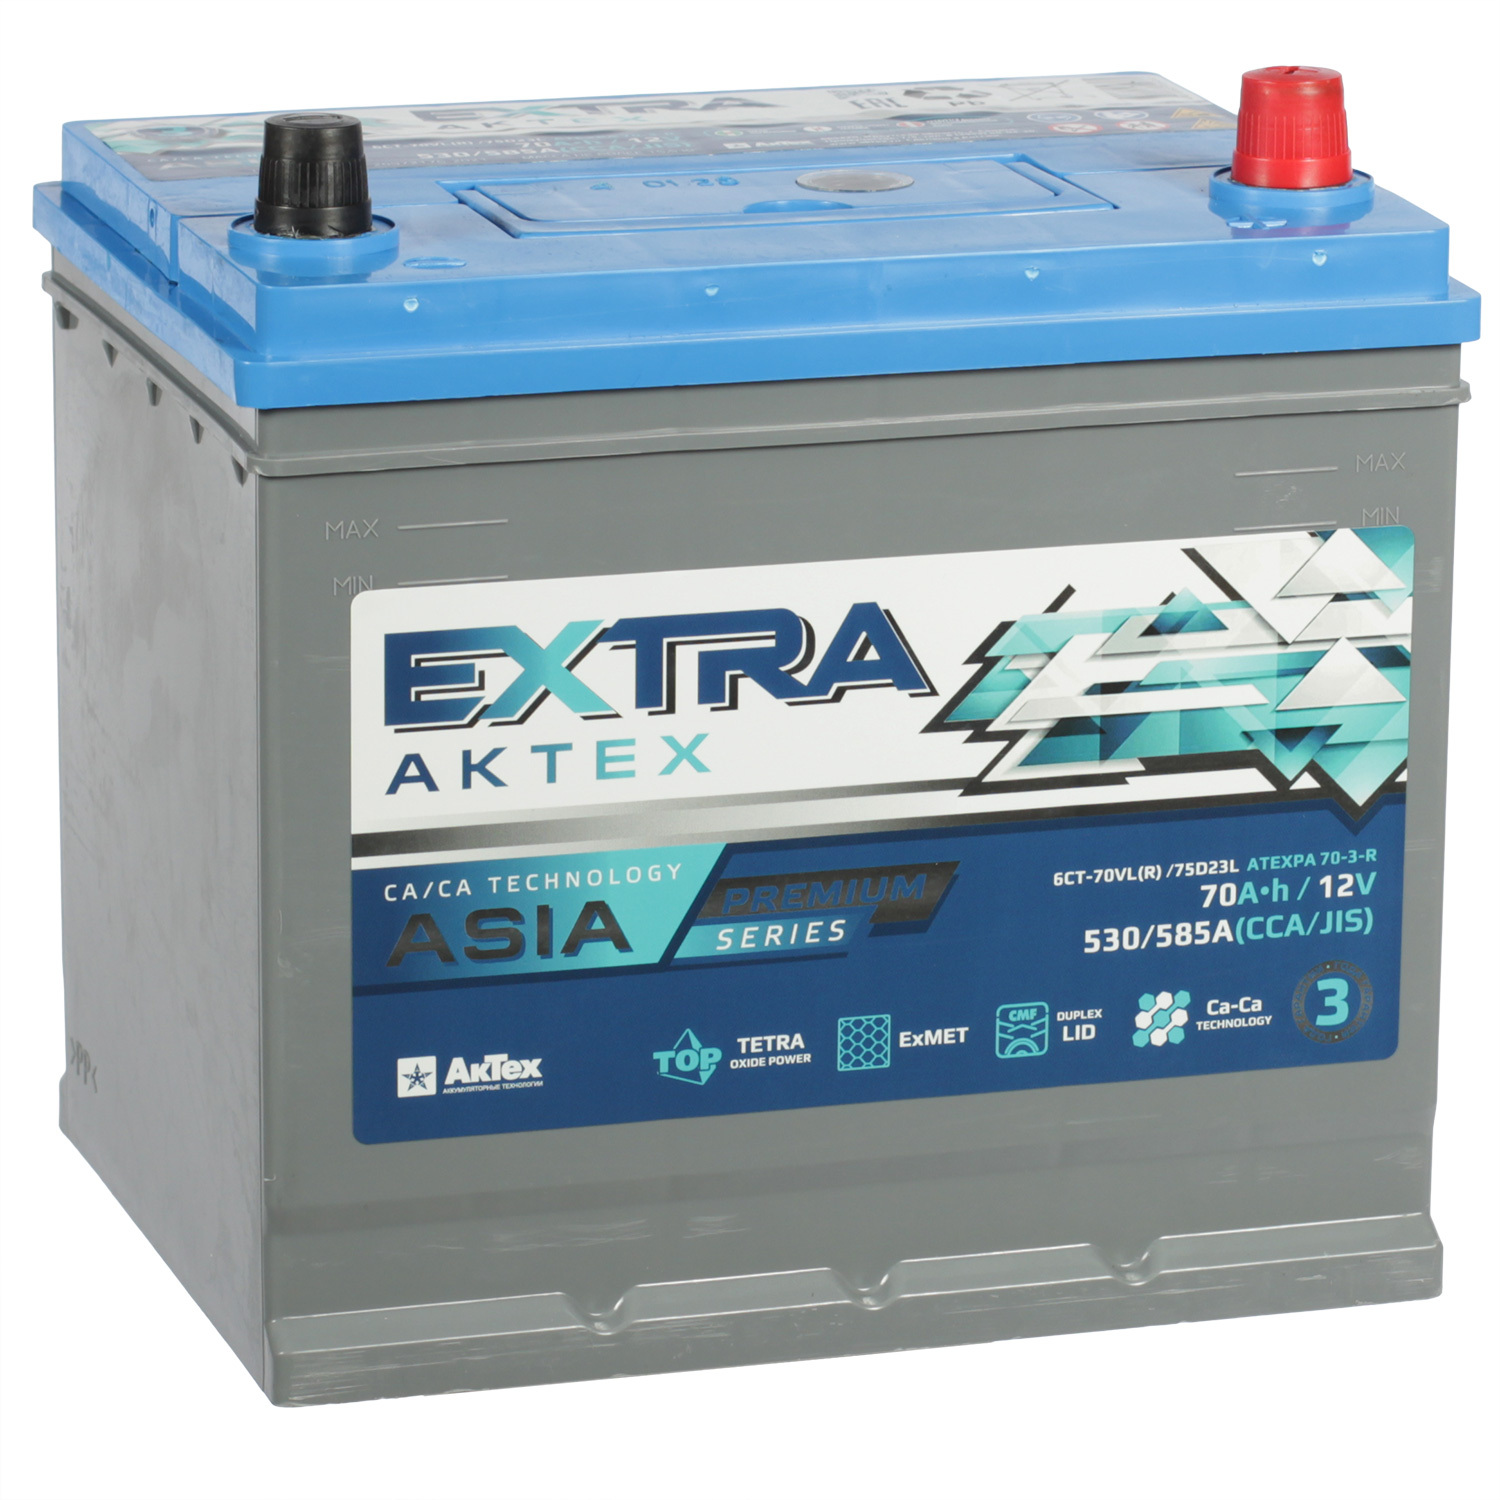 Автомобильный аккумулятор Актех Extra 70 Ач обратная полярность D23L, размер D23L ATEXPA 70-3-R - фото 1